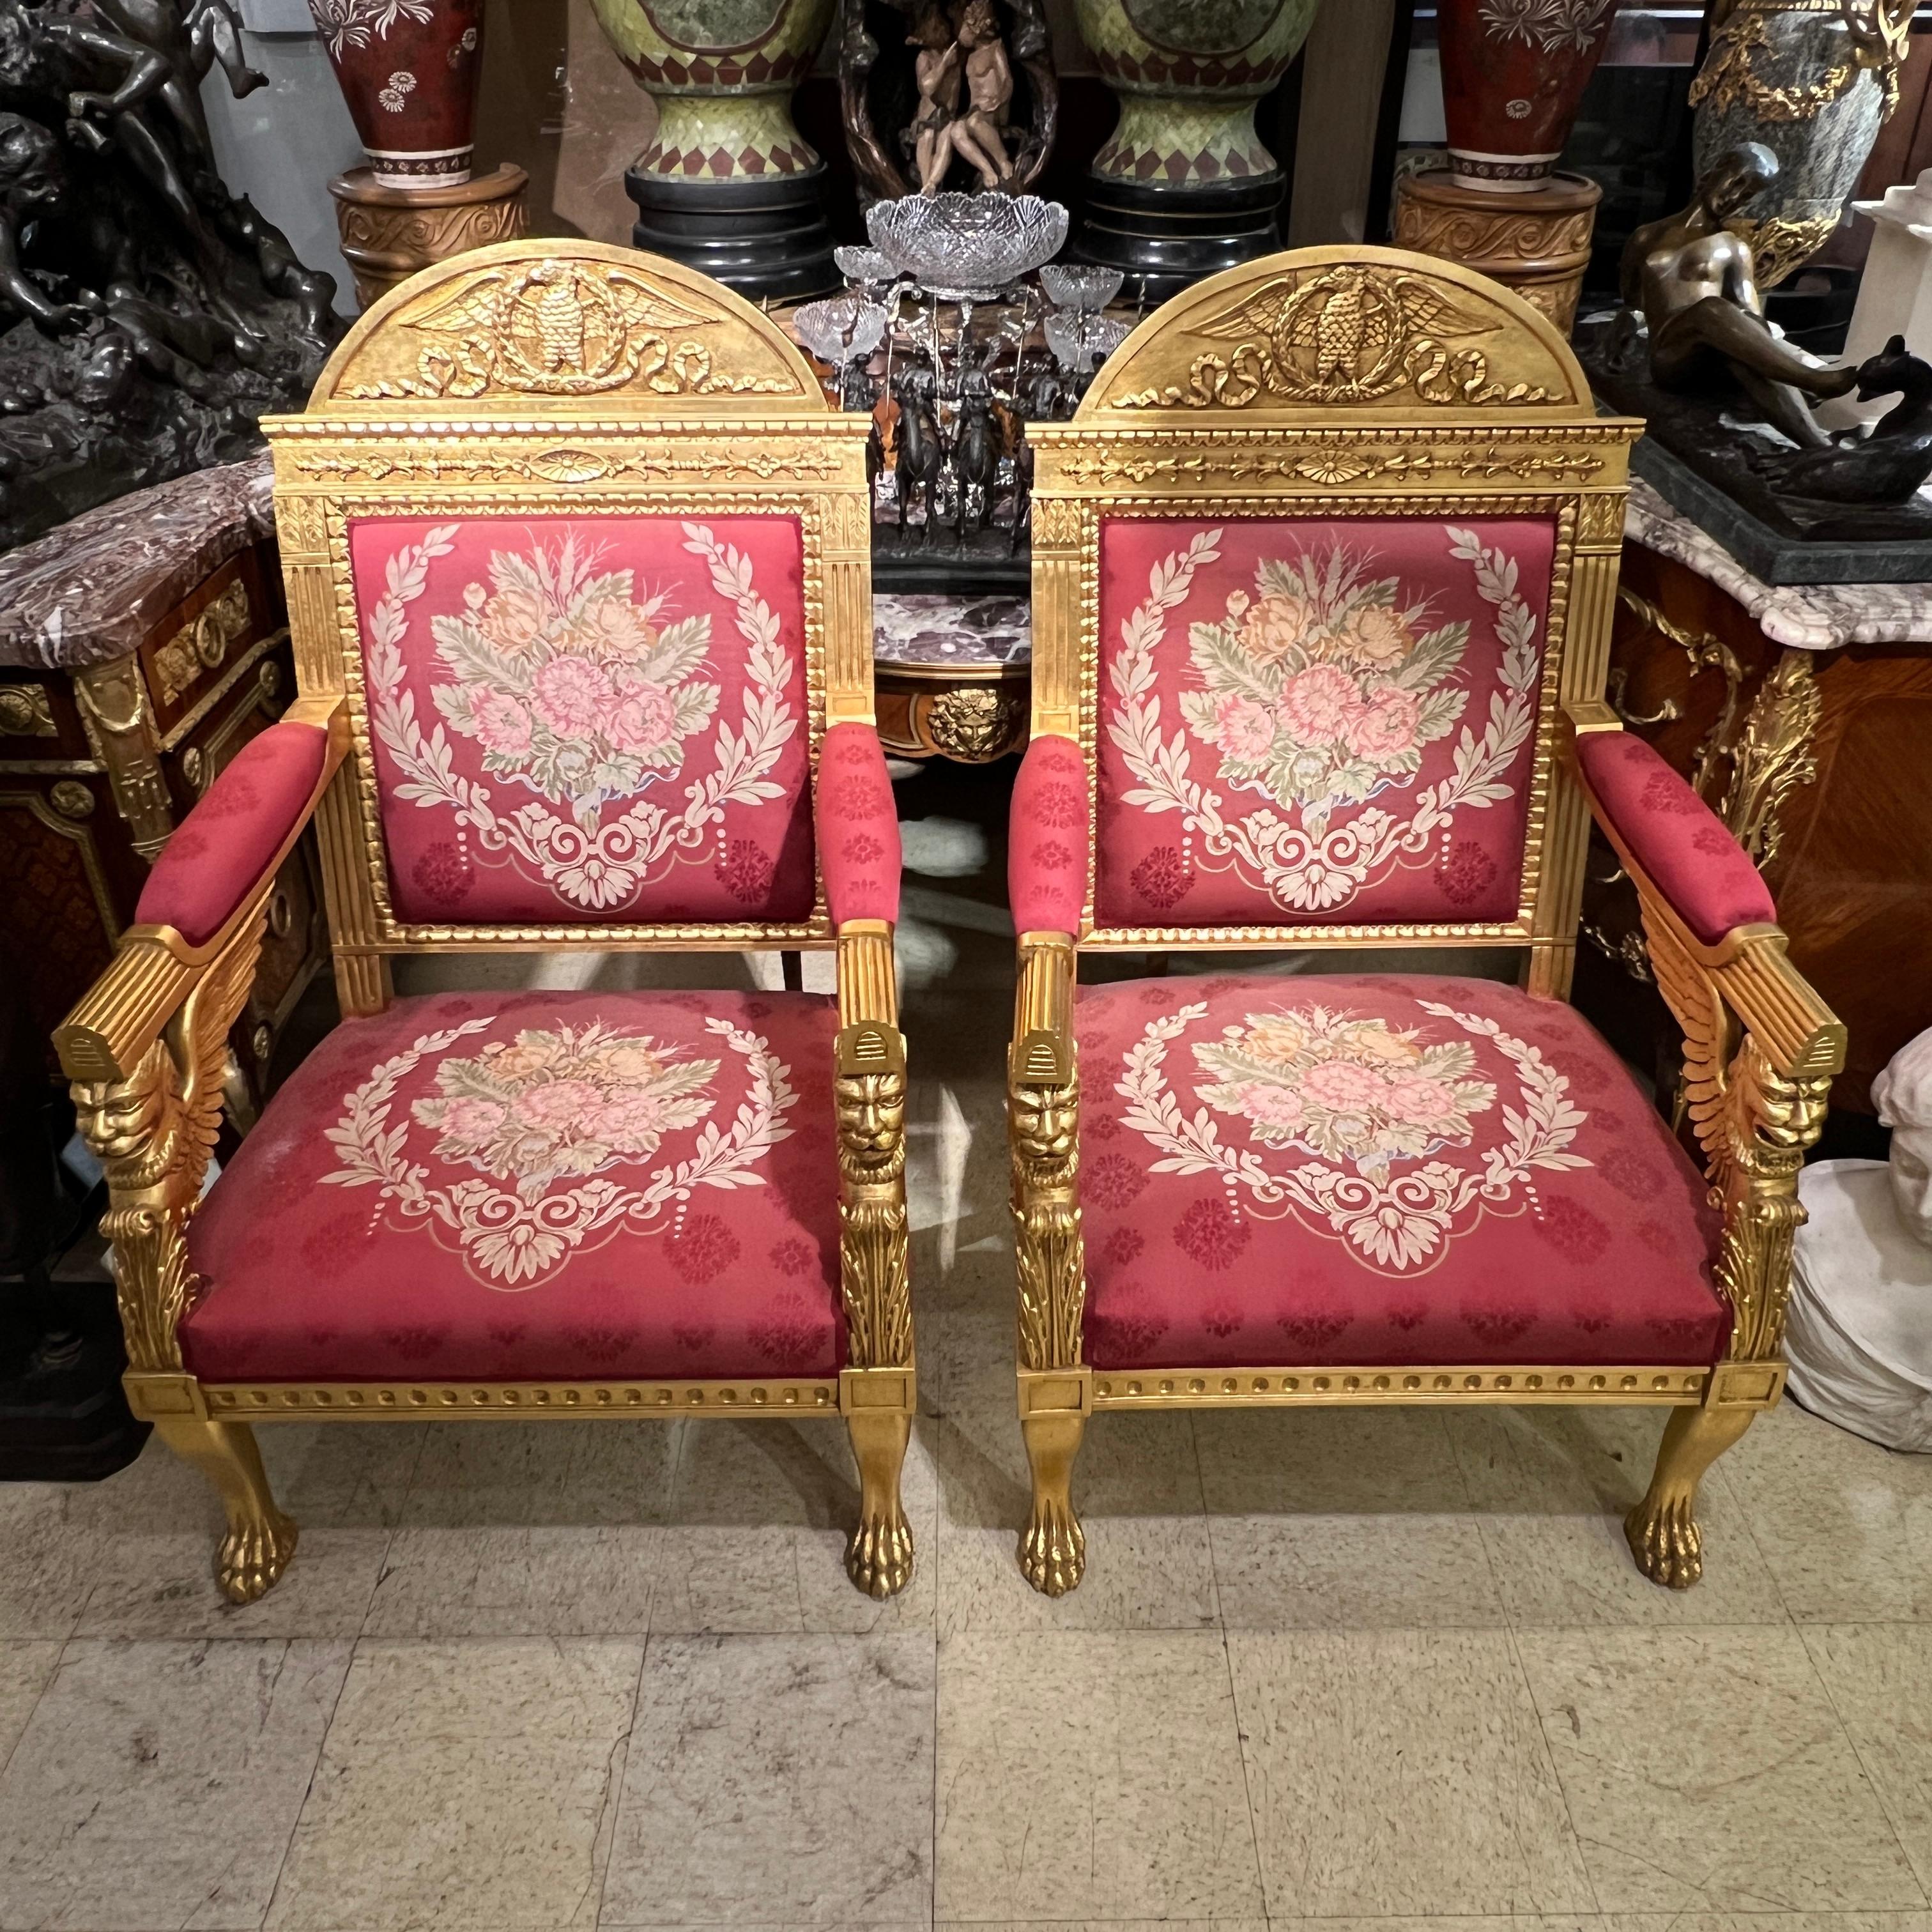 Paire de fauteuils vintage (20e siècle) en bois doré sculpté à la main dans le style français.  De style Empire, les sièges, les dossiers et les accoudoirs sont recouverts d'une belle tapisserie rouge avec des décorations florales brodées au petit